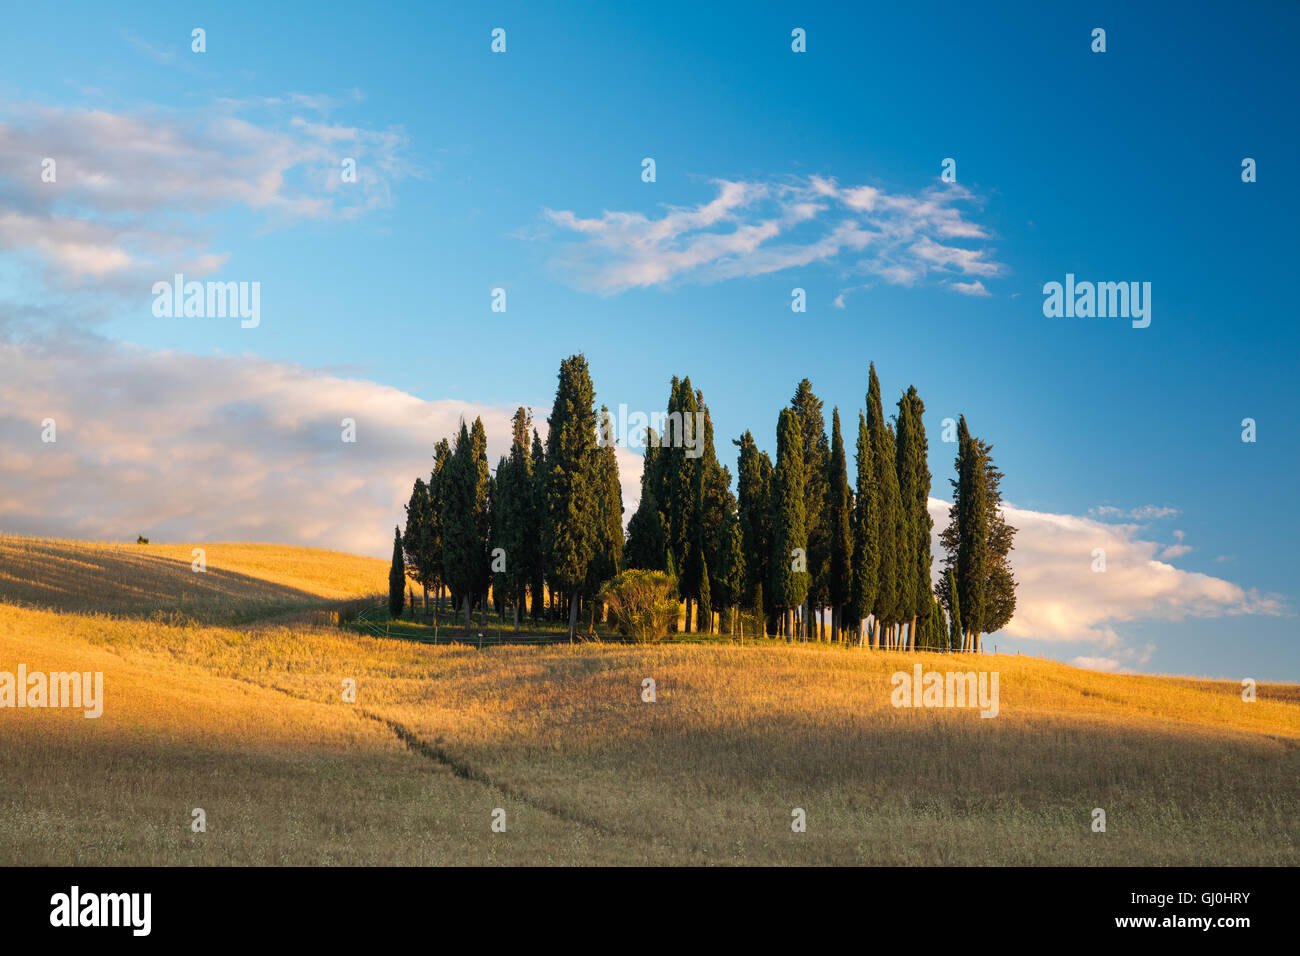 ein Wäldchen von Zypern Bäume nr San Quirico d ' Orcia, Tuscany Stockfoto